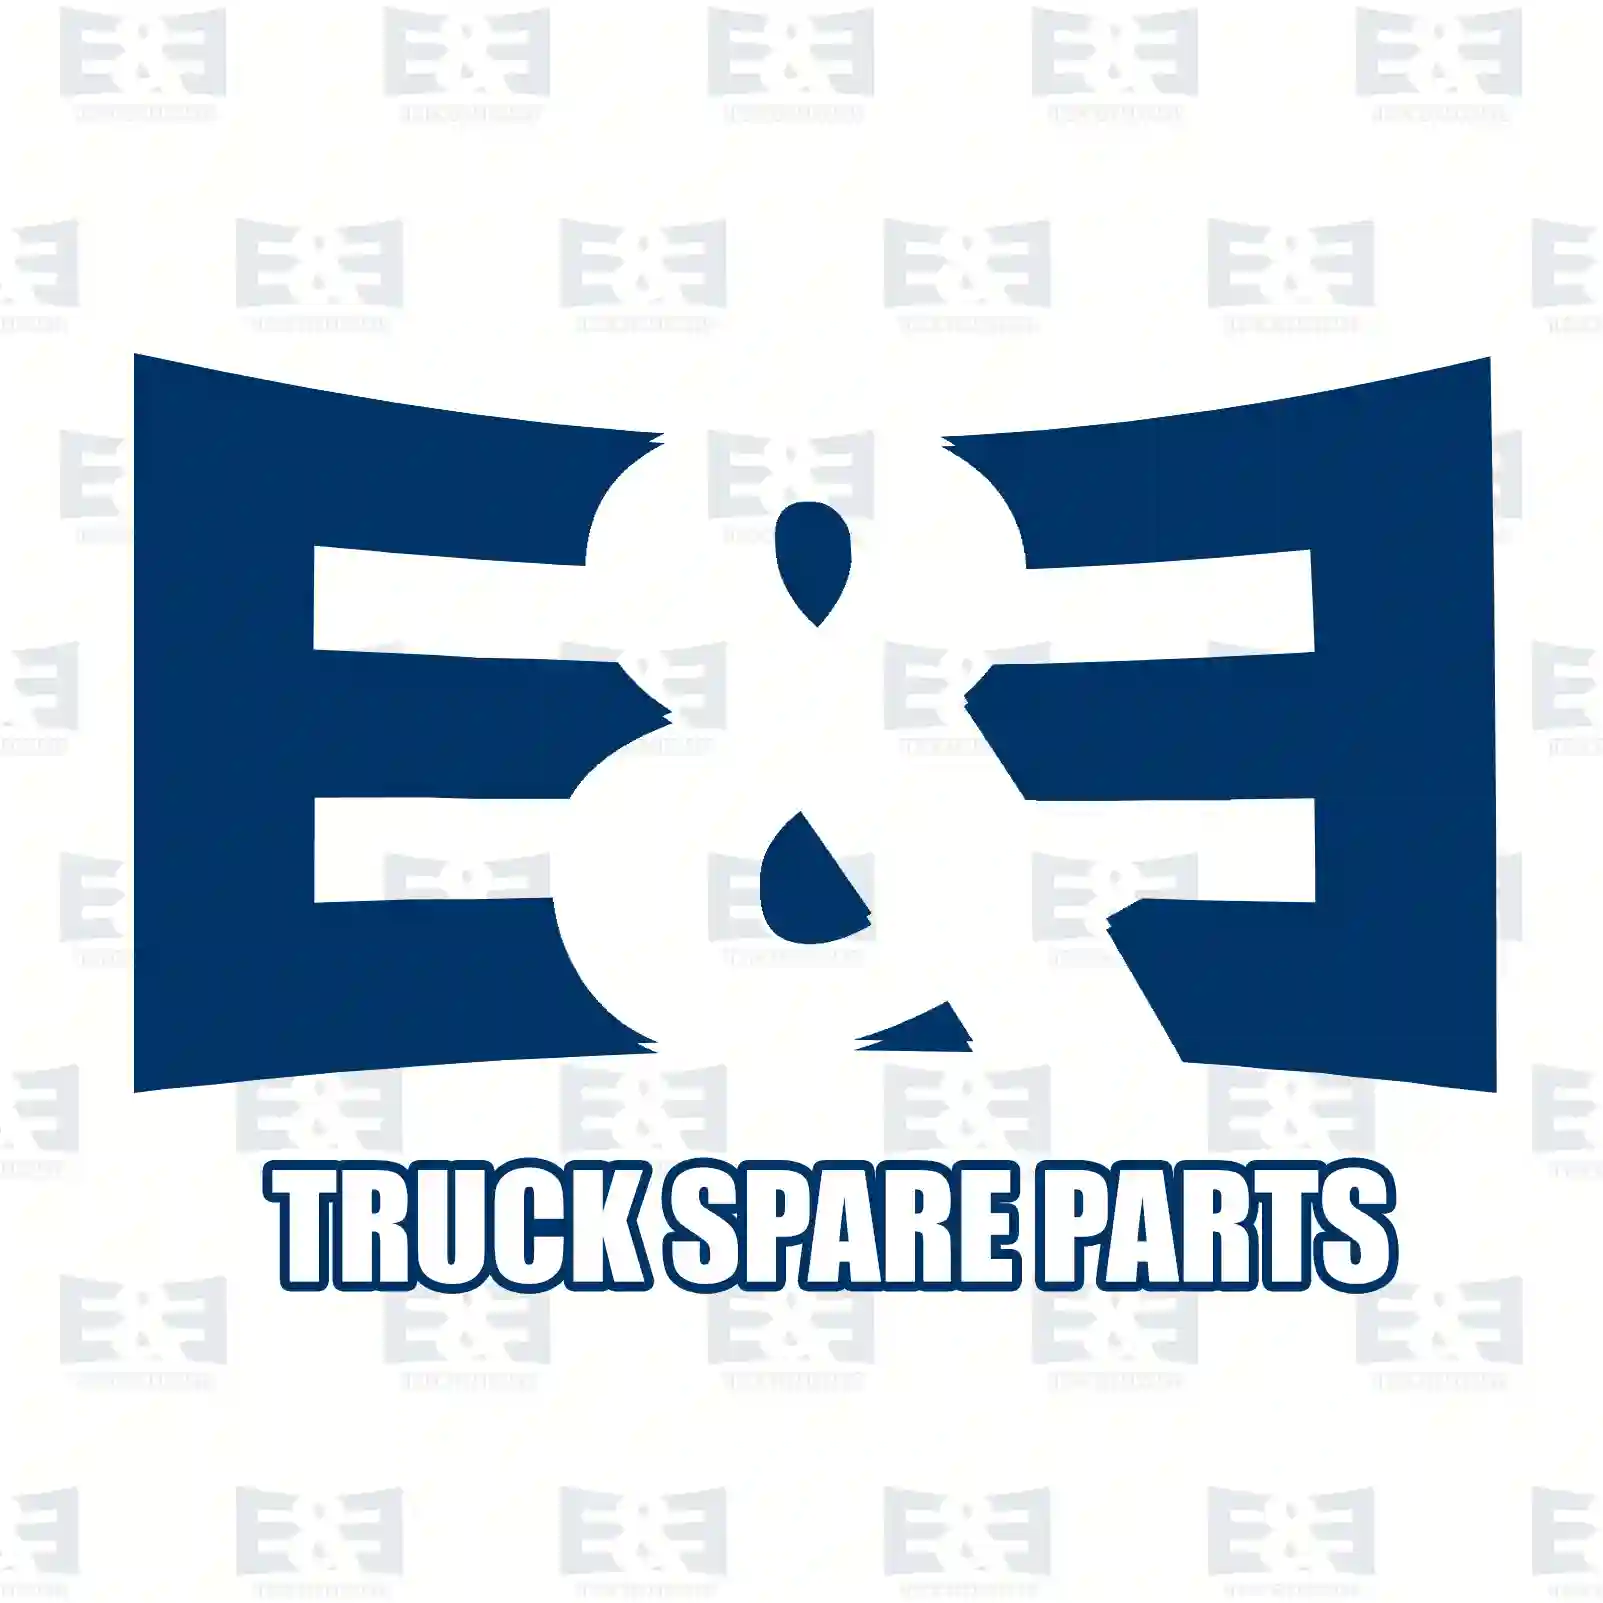 Engine mounting, 2E2200133, 1377905, 1384138, 6C11-6F012-AA, 6C11-6F012-AB ||  2E2200133 E&E Truck Spare Parts | Truck Spare Parts, Auotomotive Spare Parts Engine mounting, 2E2200133, 1377905, 1384138, 6C11-6F012-AA, 6C11-6F012-AB ||  2E2200133 E&E Truck Spare Parts | Truck Spare Parts, Auotomotive Spare Parts